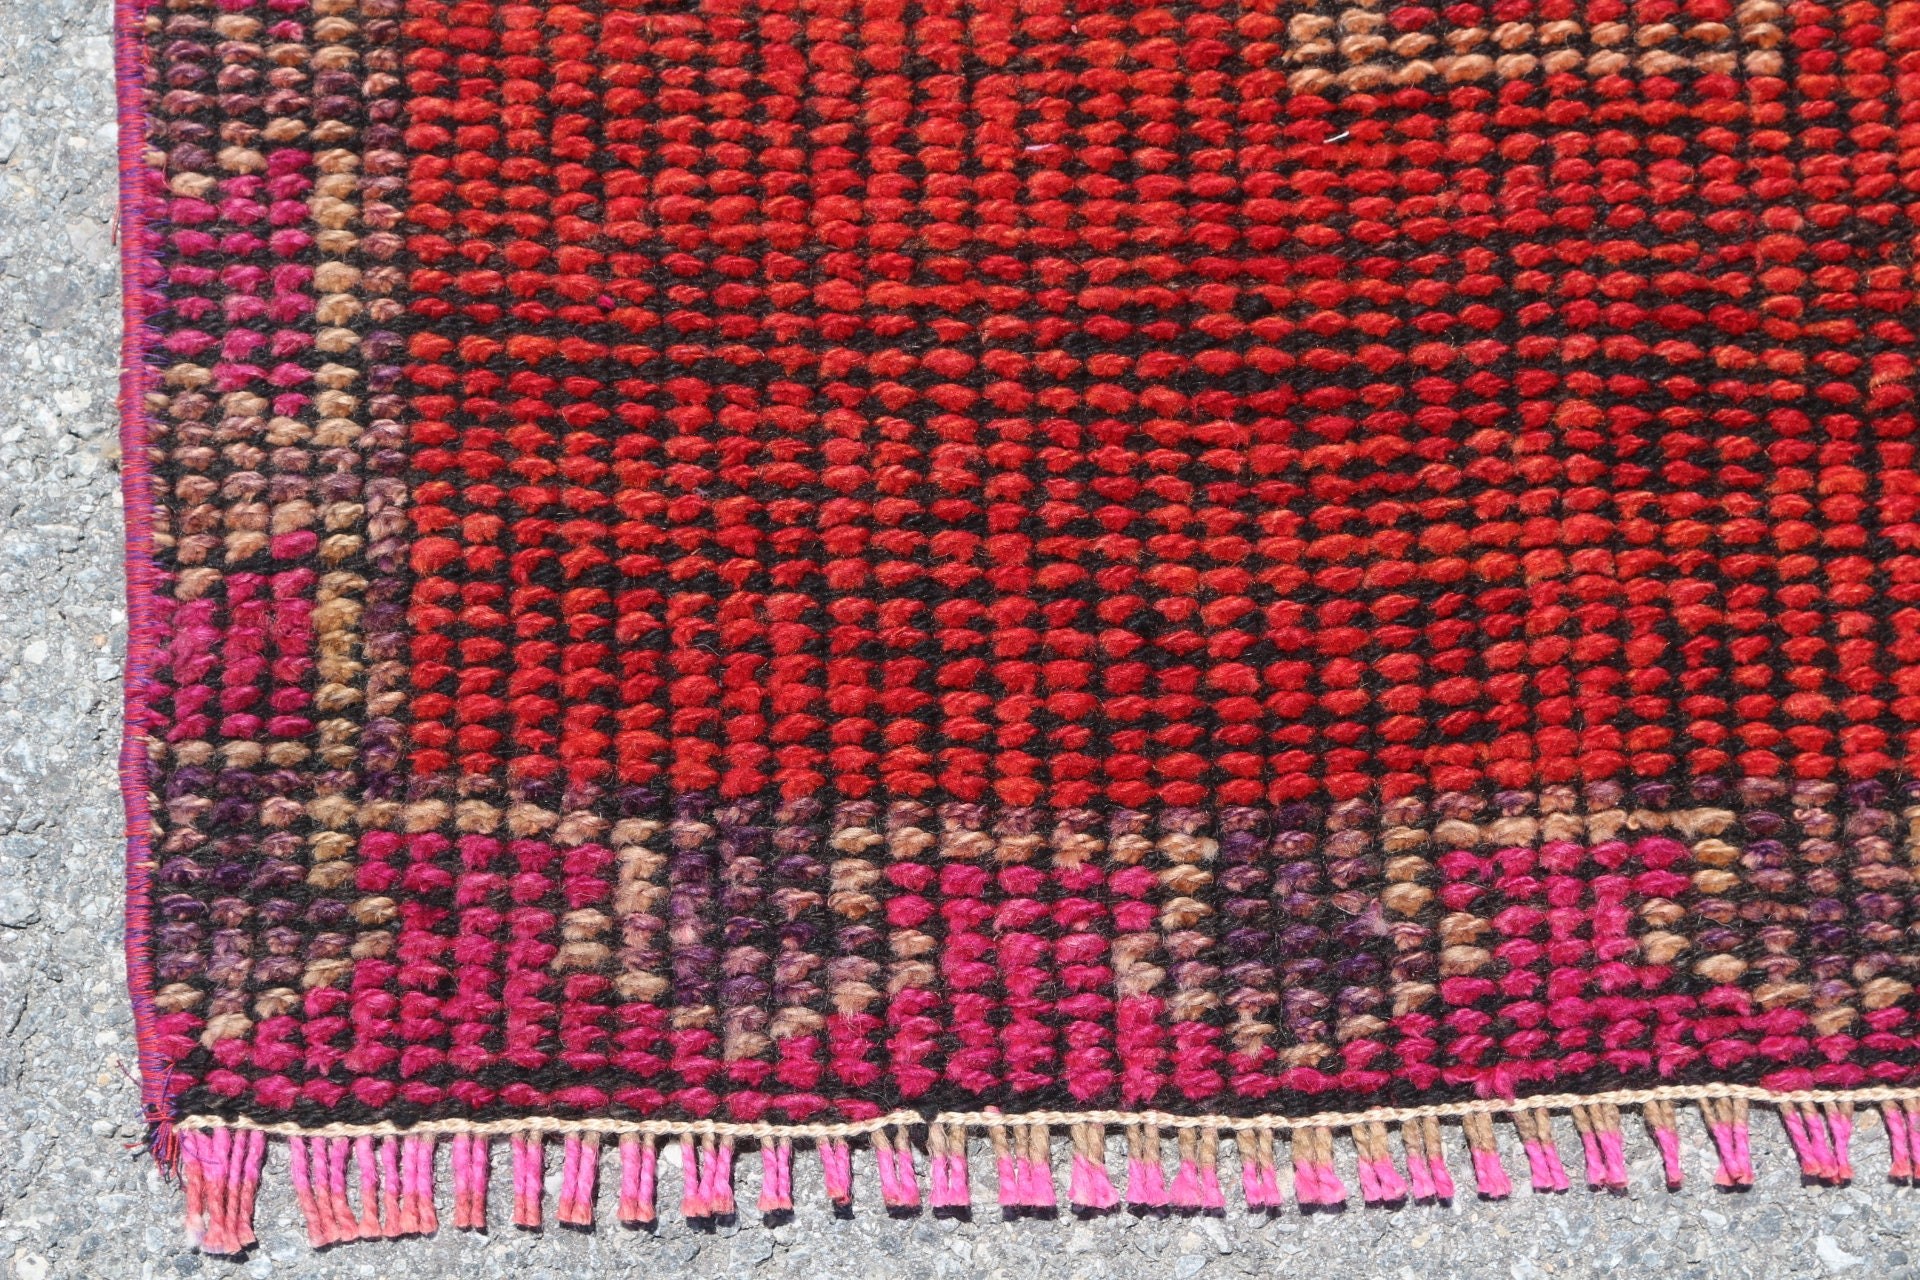 Anatolian Rug, Wool Rug, 3x10.6 ft Runner Rug, Red Bedroom Rugs, Rugs for Stair, Pale Rug, Vintage Rugs, Stair Rugs, Retro Rug, Turkish Rug